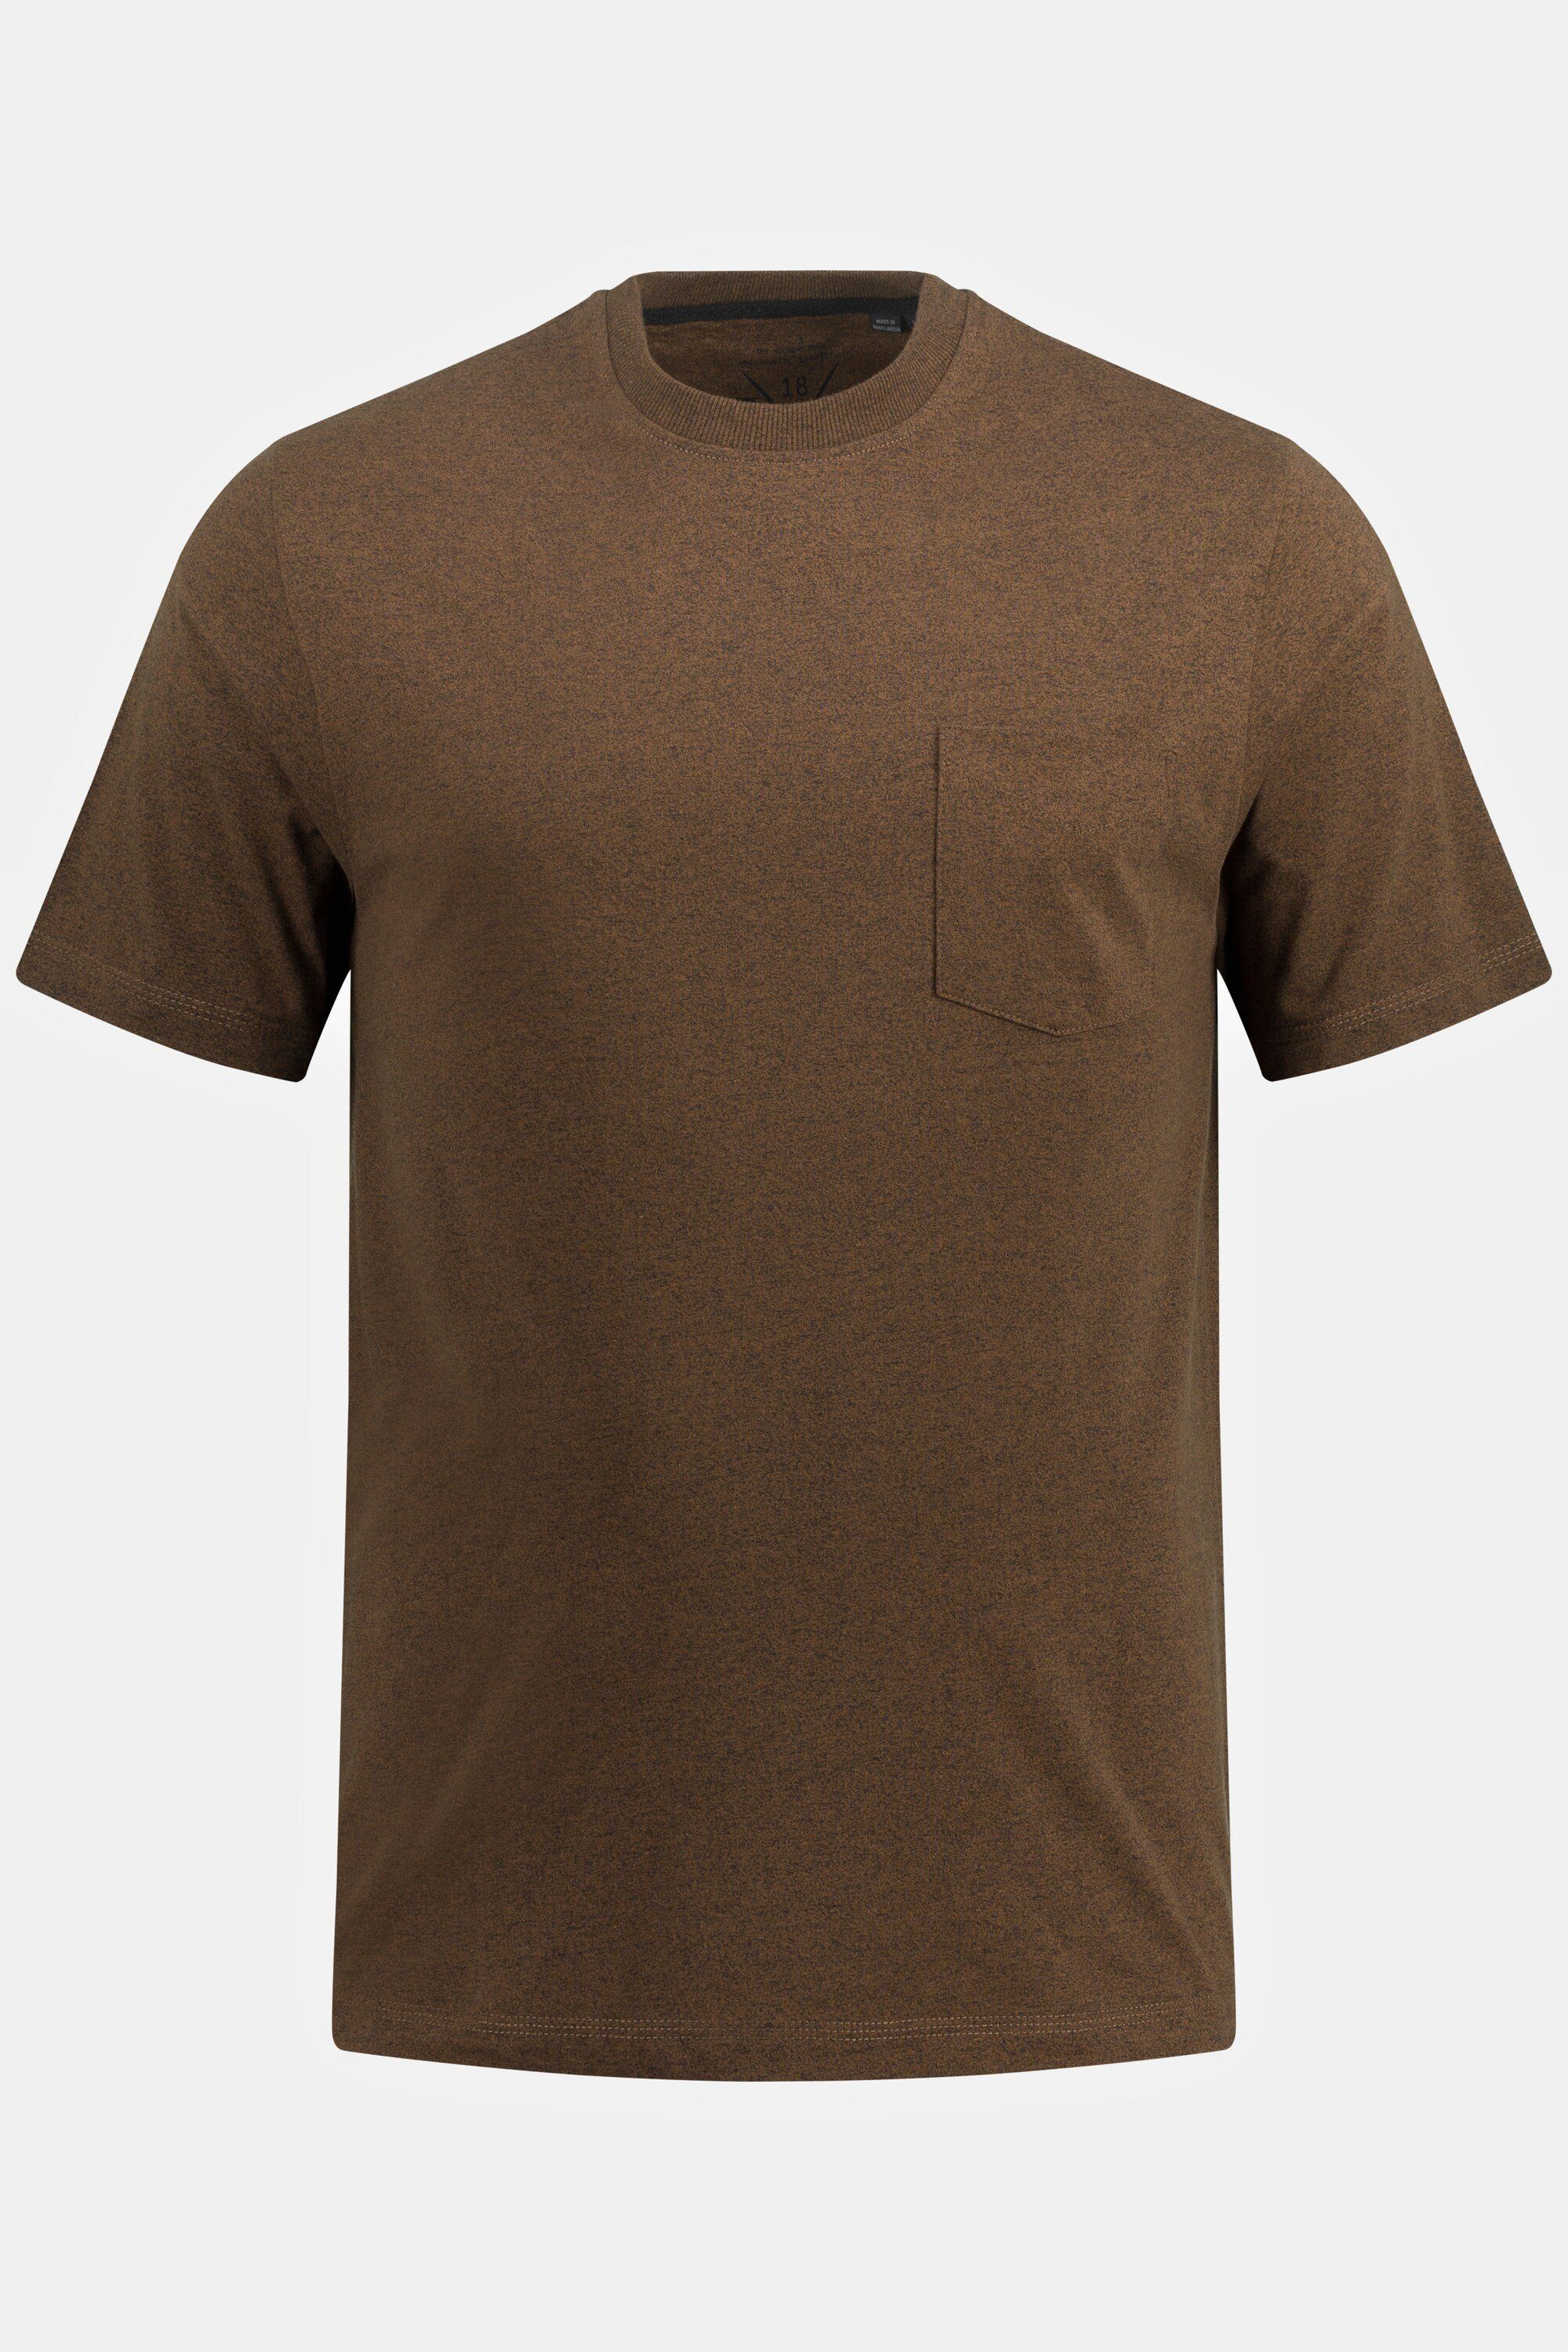 JP1880 T-Shirt T-Shirt Halbarm Brusttasche Rundhals braun